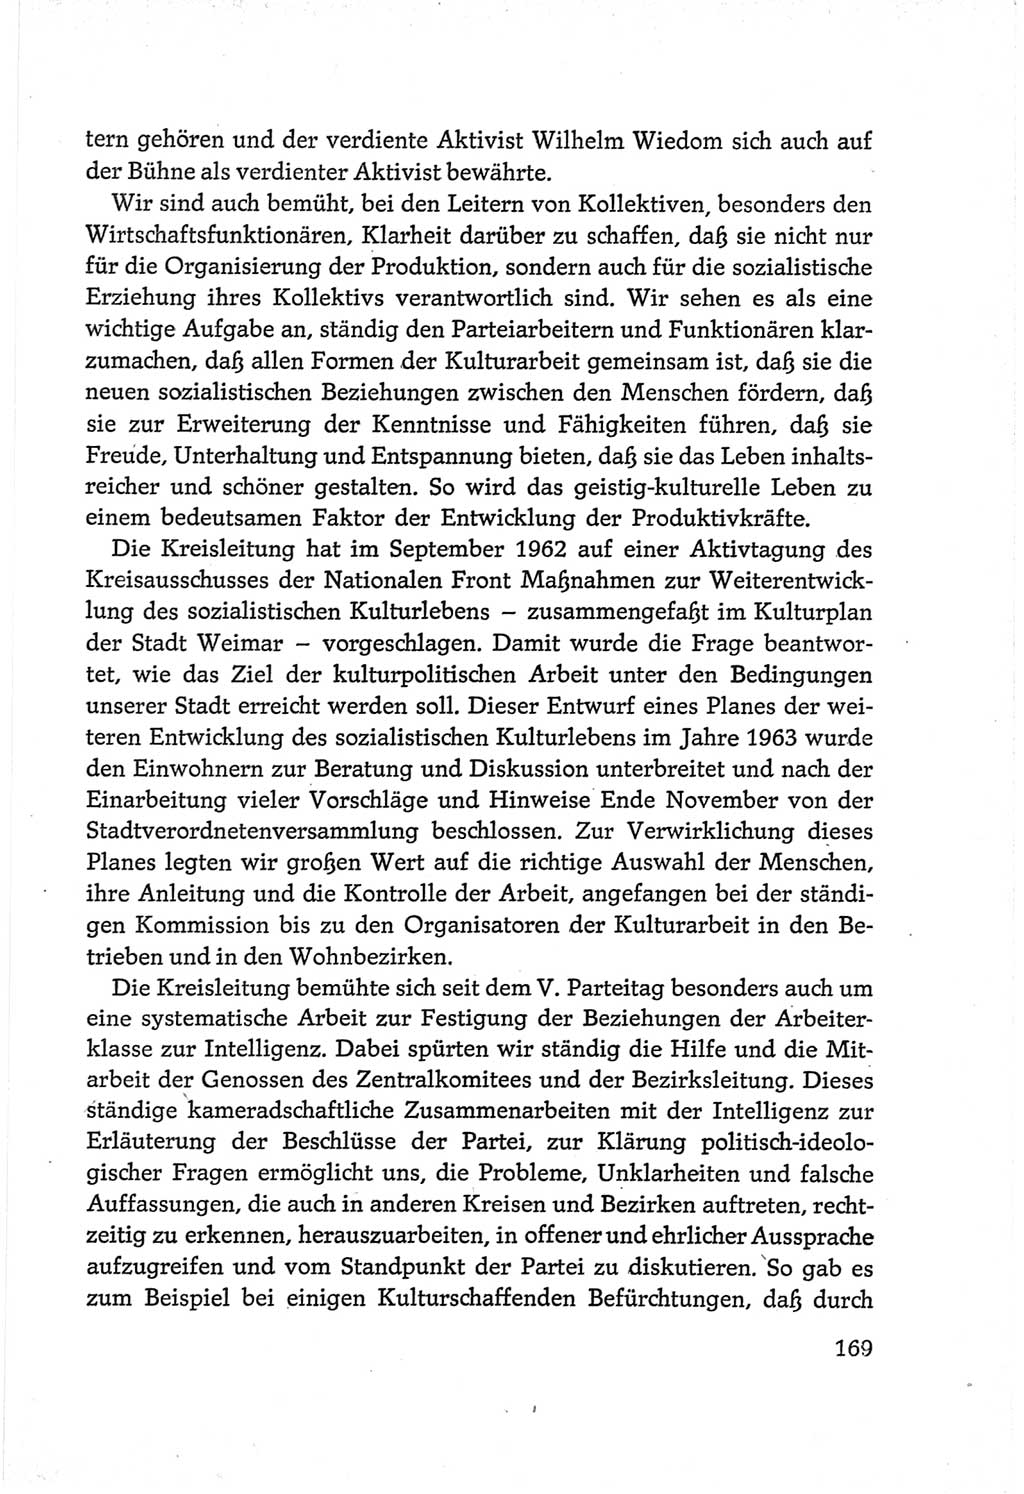 Protokoll der Verhandlungen des Ⅵ. Parteitages der Sozialistischen Einheitspartei Deutschlands (SED) [Deutsche Demokratische Republik (DDR)] 1963, Band Ⅲ, Seite 169 (Prot. Verh. Ⅵ. PT SED DDR 1963, Bd. Ⅲ, S. 169)